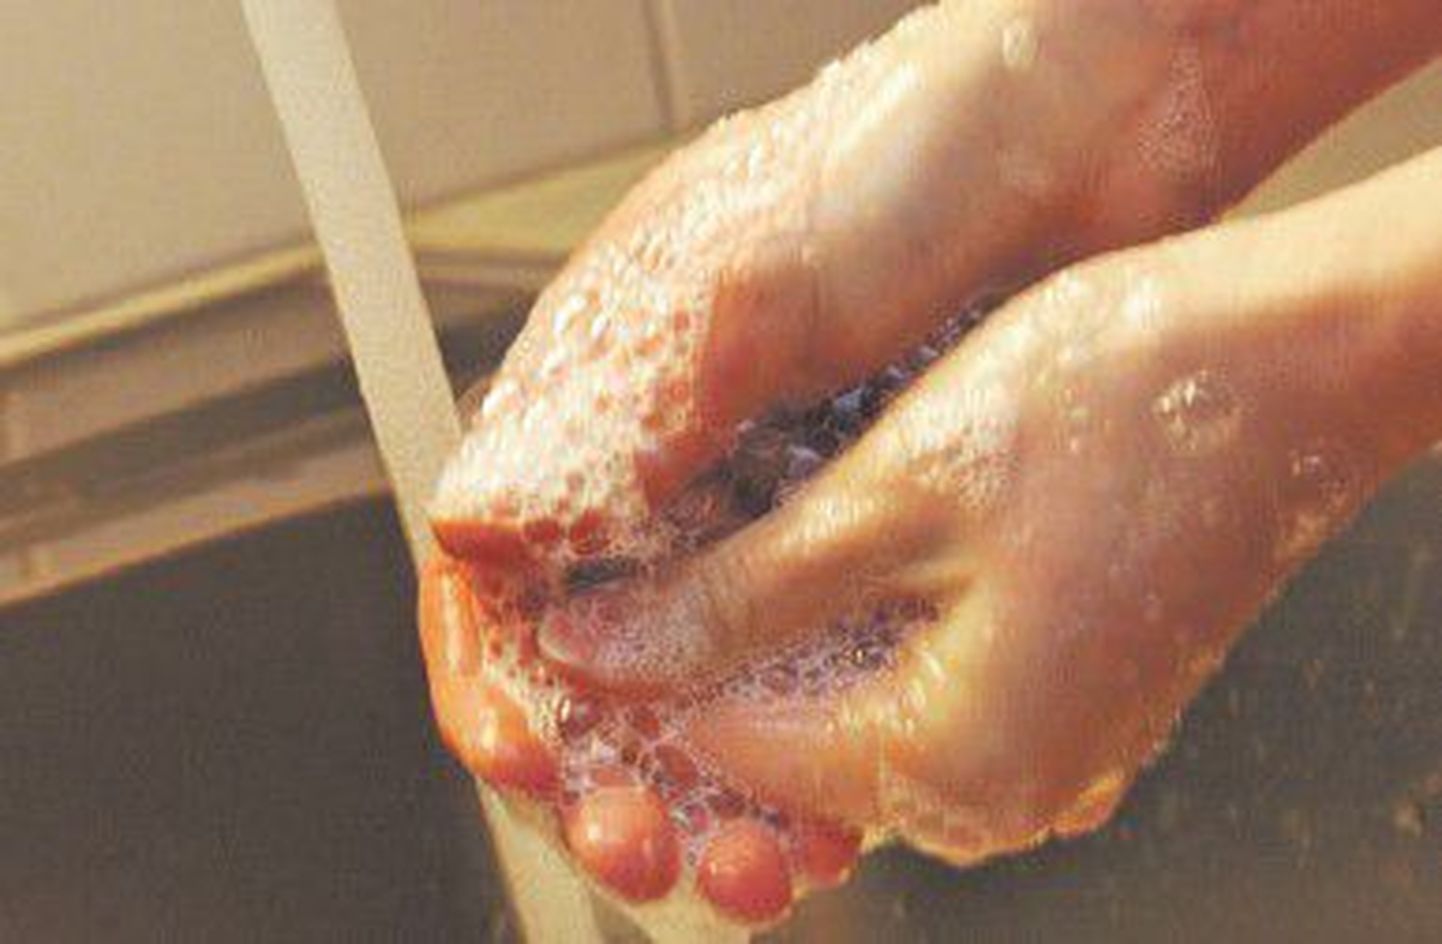 Частое мытье рук может предотвратить заражение гепатитом А.